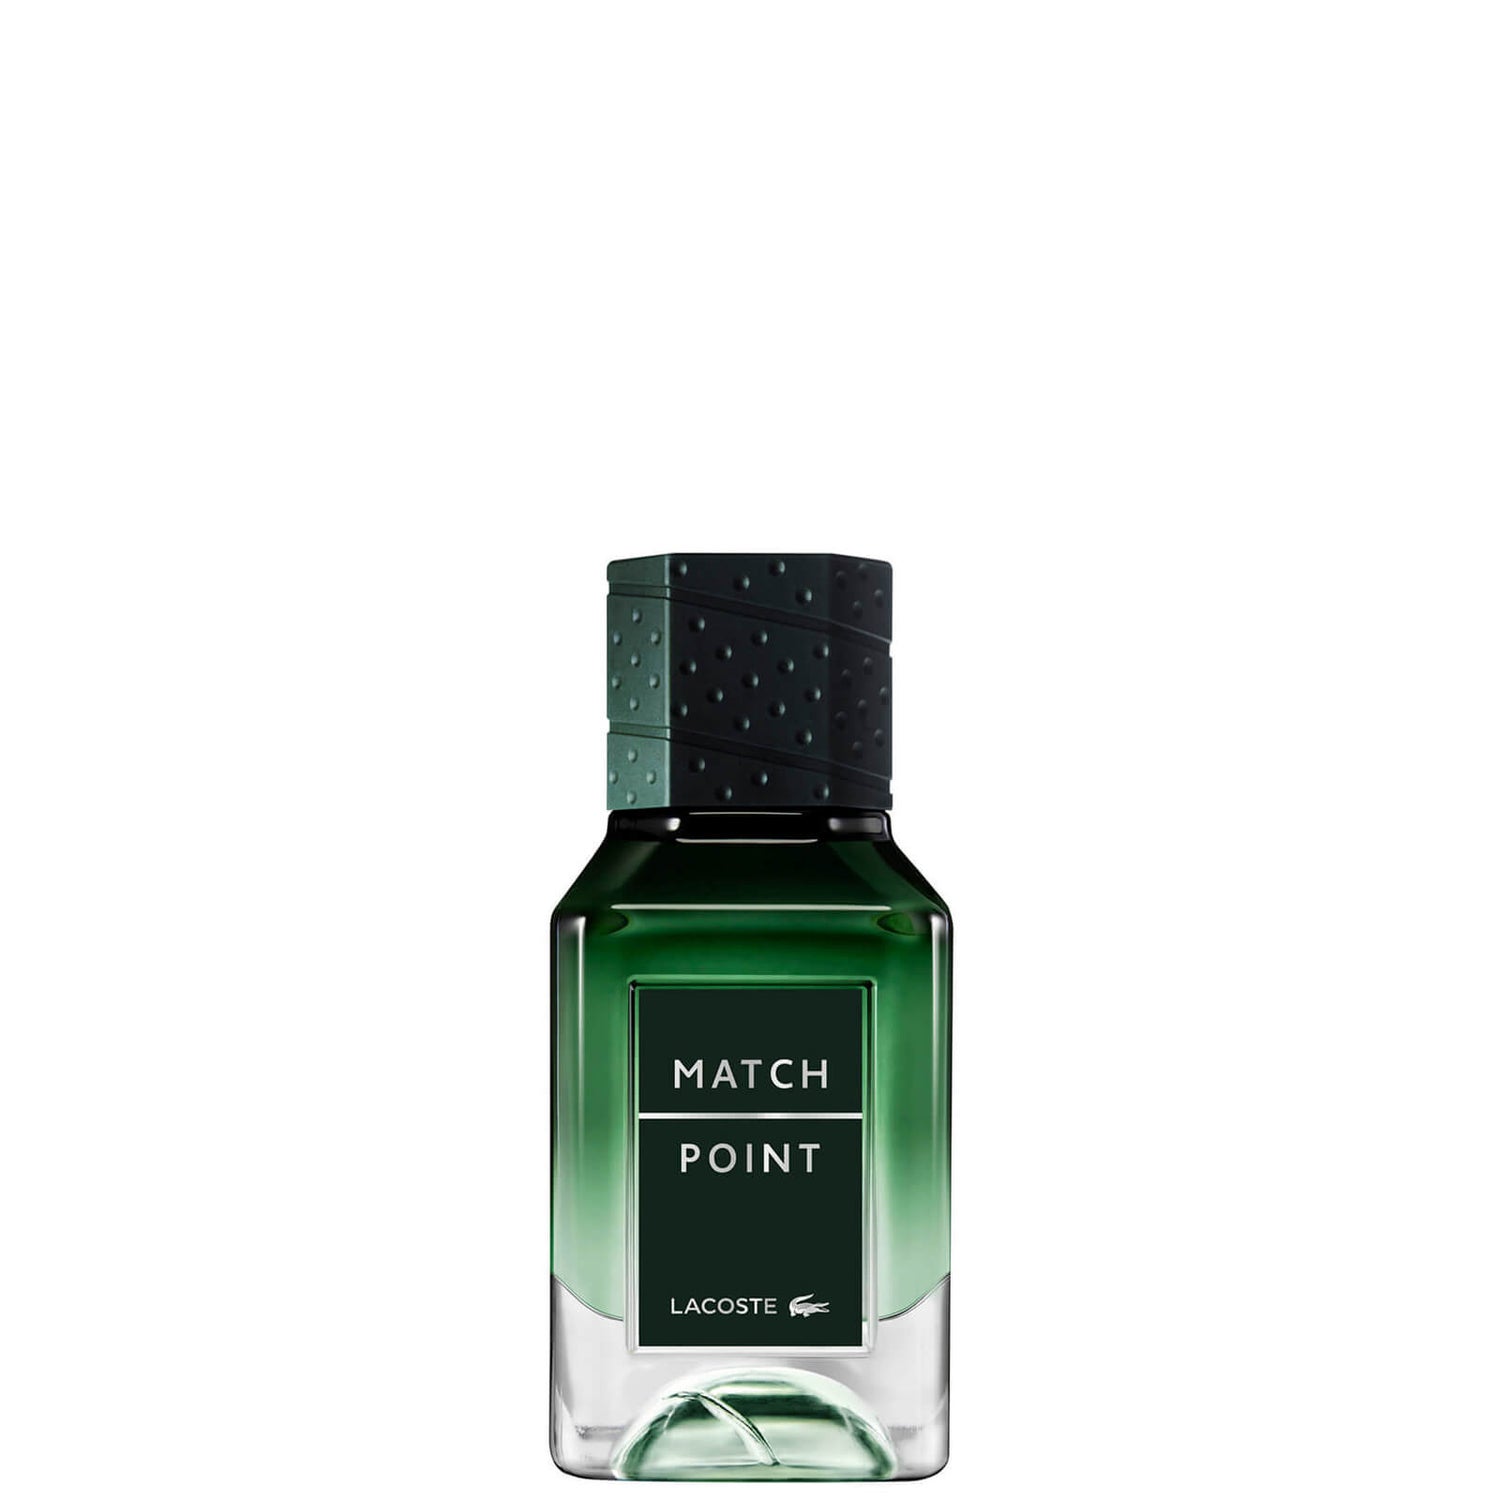 Lacoste Match Point Eau de Parfum til mænd 30 ml